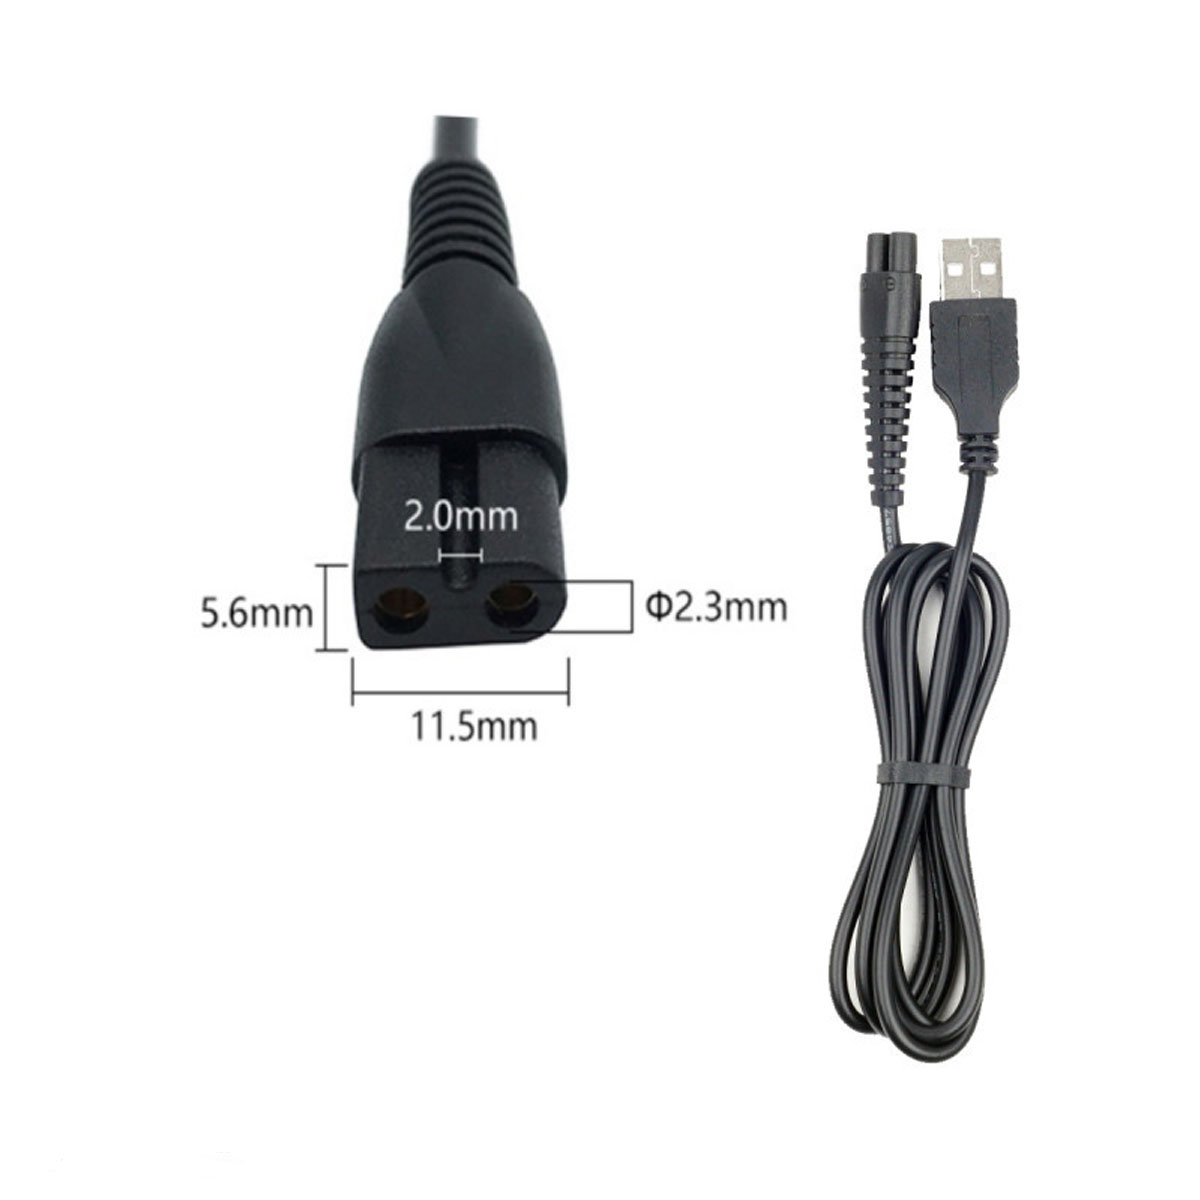 Кабель USB DL44 для зарядки электробритв, длина 1 метр, цвет черный (восьмерка)